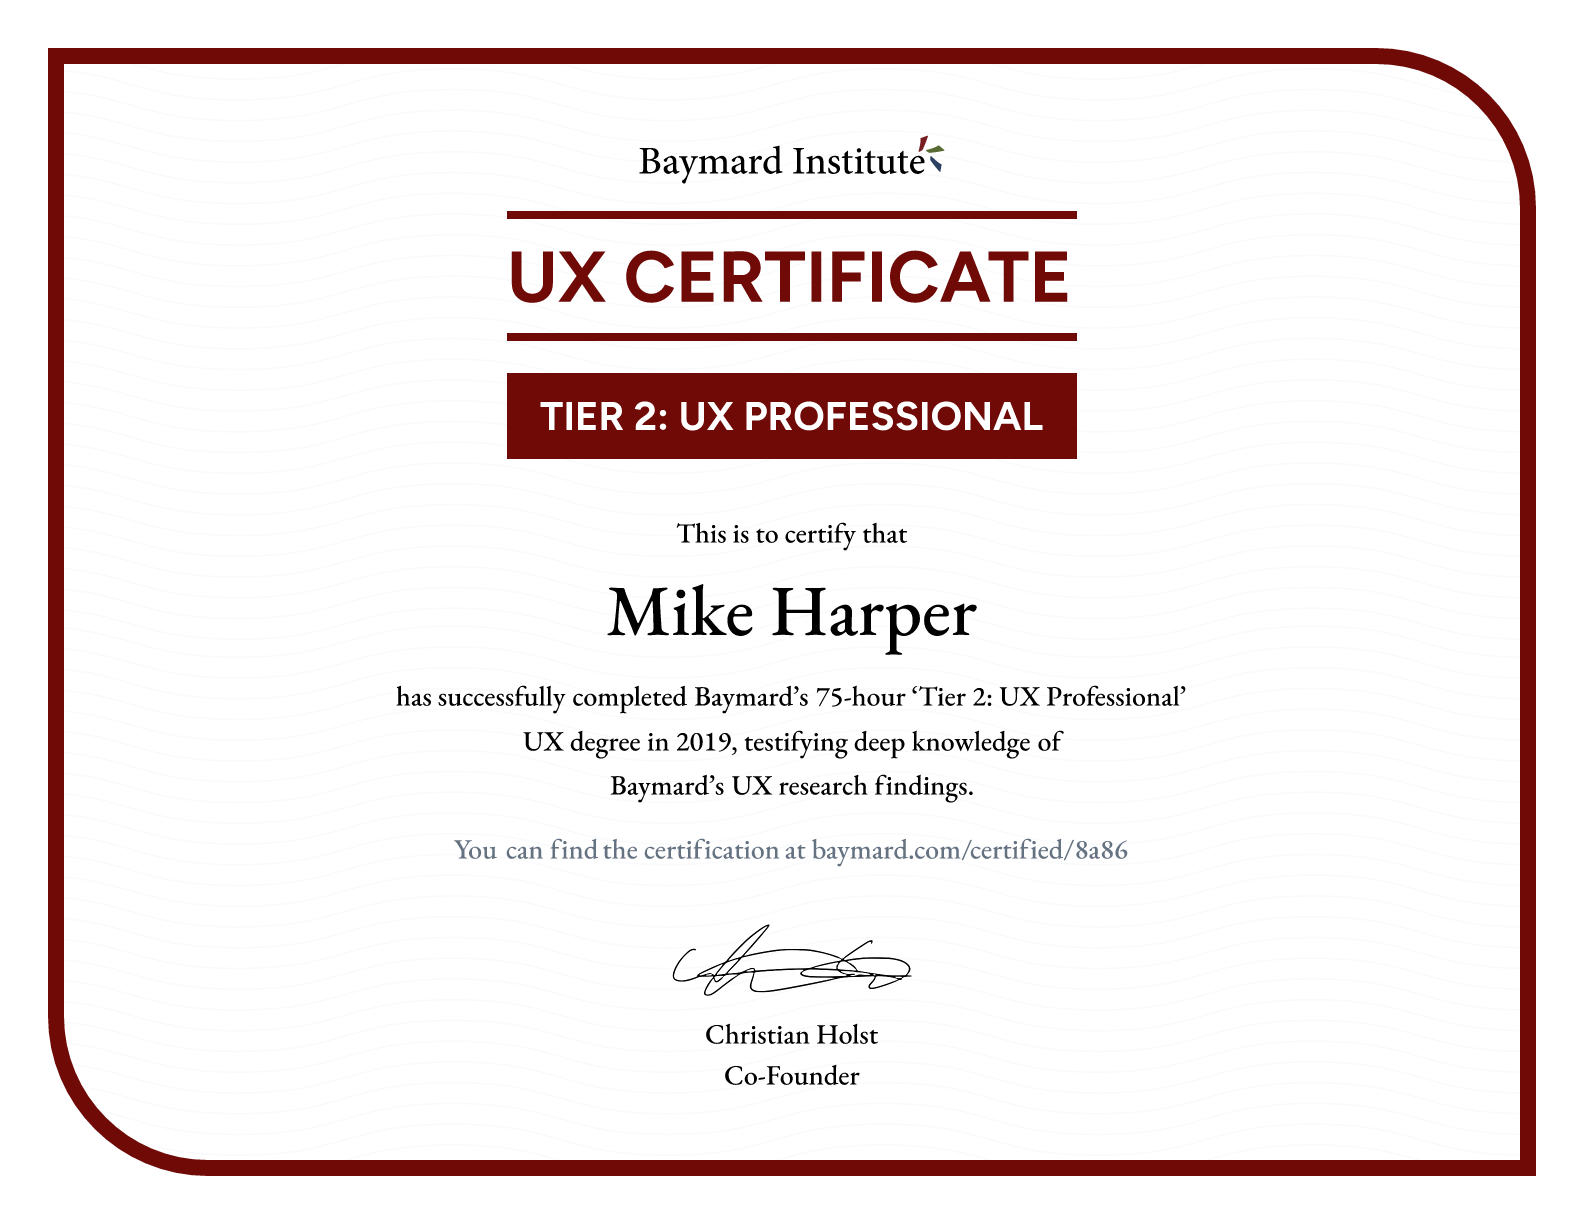 Mike Harper’s certificate